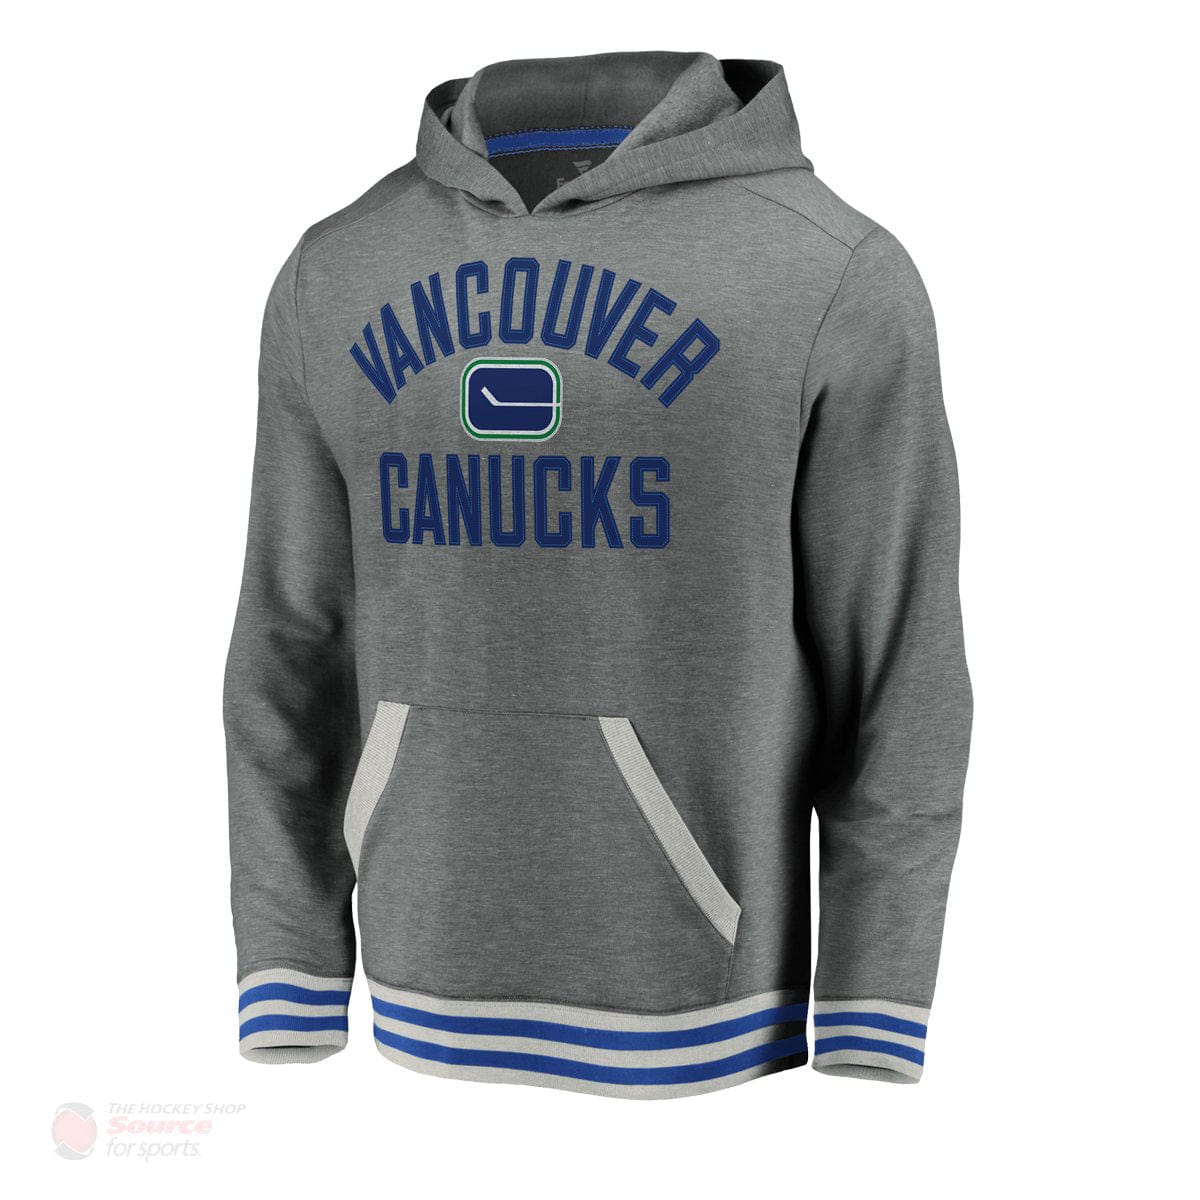 Vancouver Canucks Fanatics Upperclassmen Vintage Pullover Mens Hoody